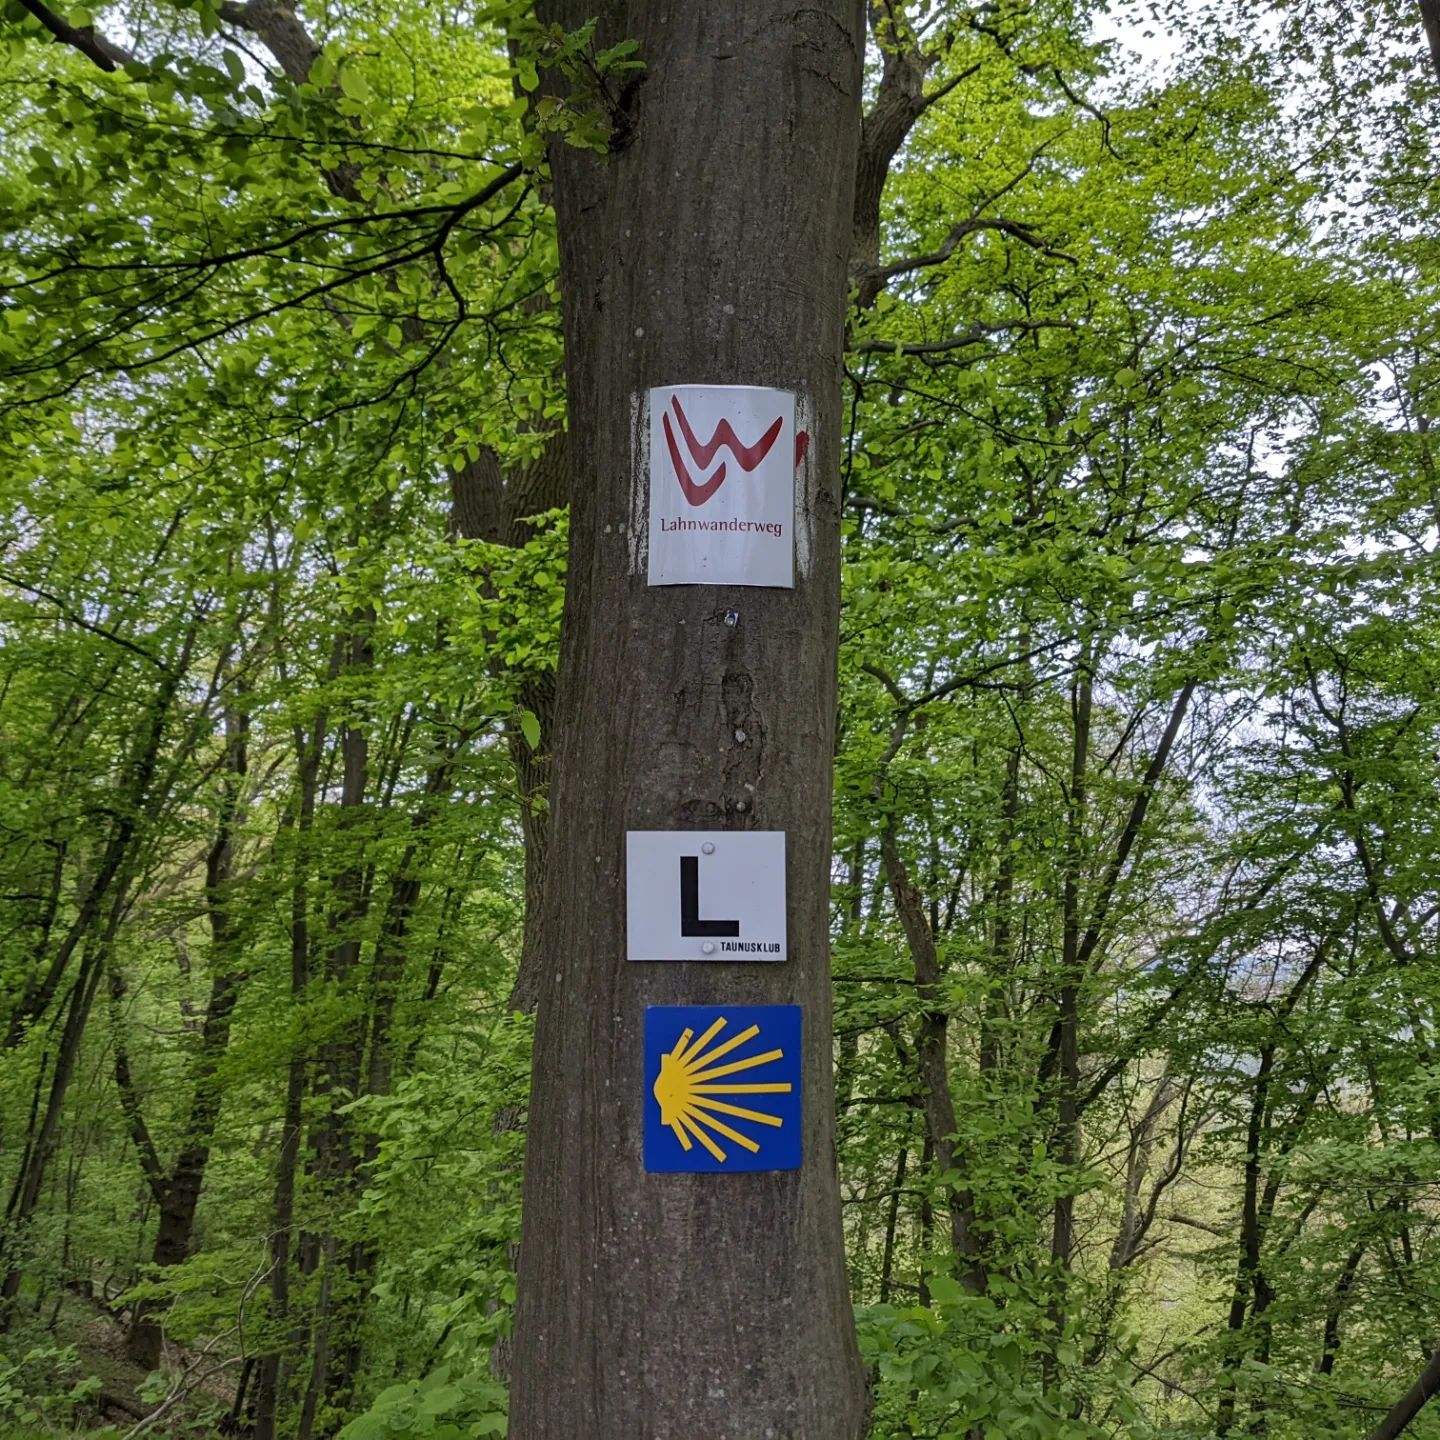 Lahnhöhenweg : Diez - Laurenburg

Wie sind 19 km gelaufen und 11 km mit der Bahn zurück zum Start.

We walked 19 km and the railway back to the start. 